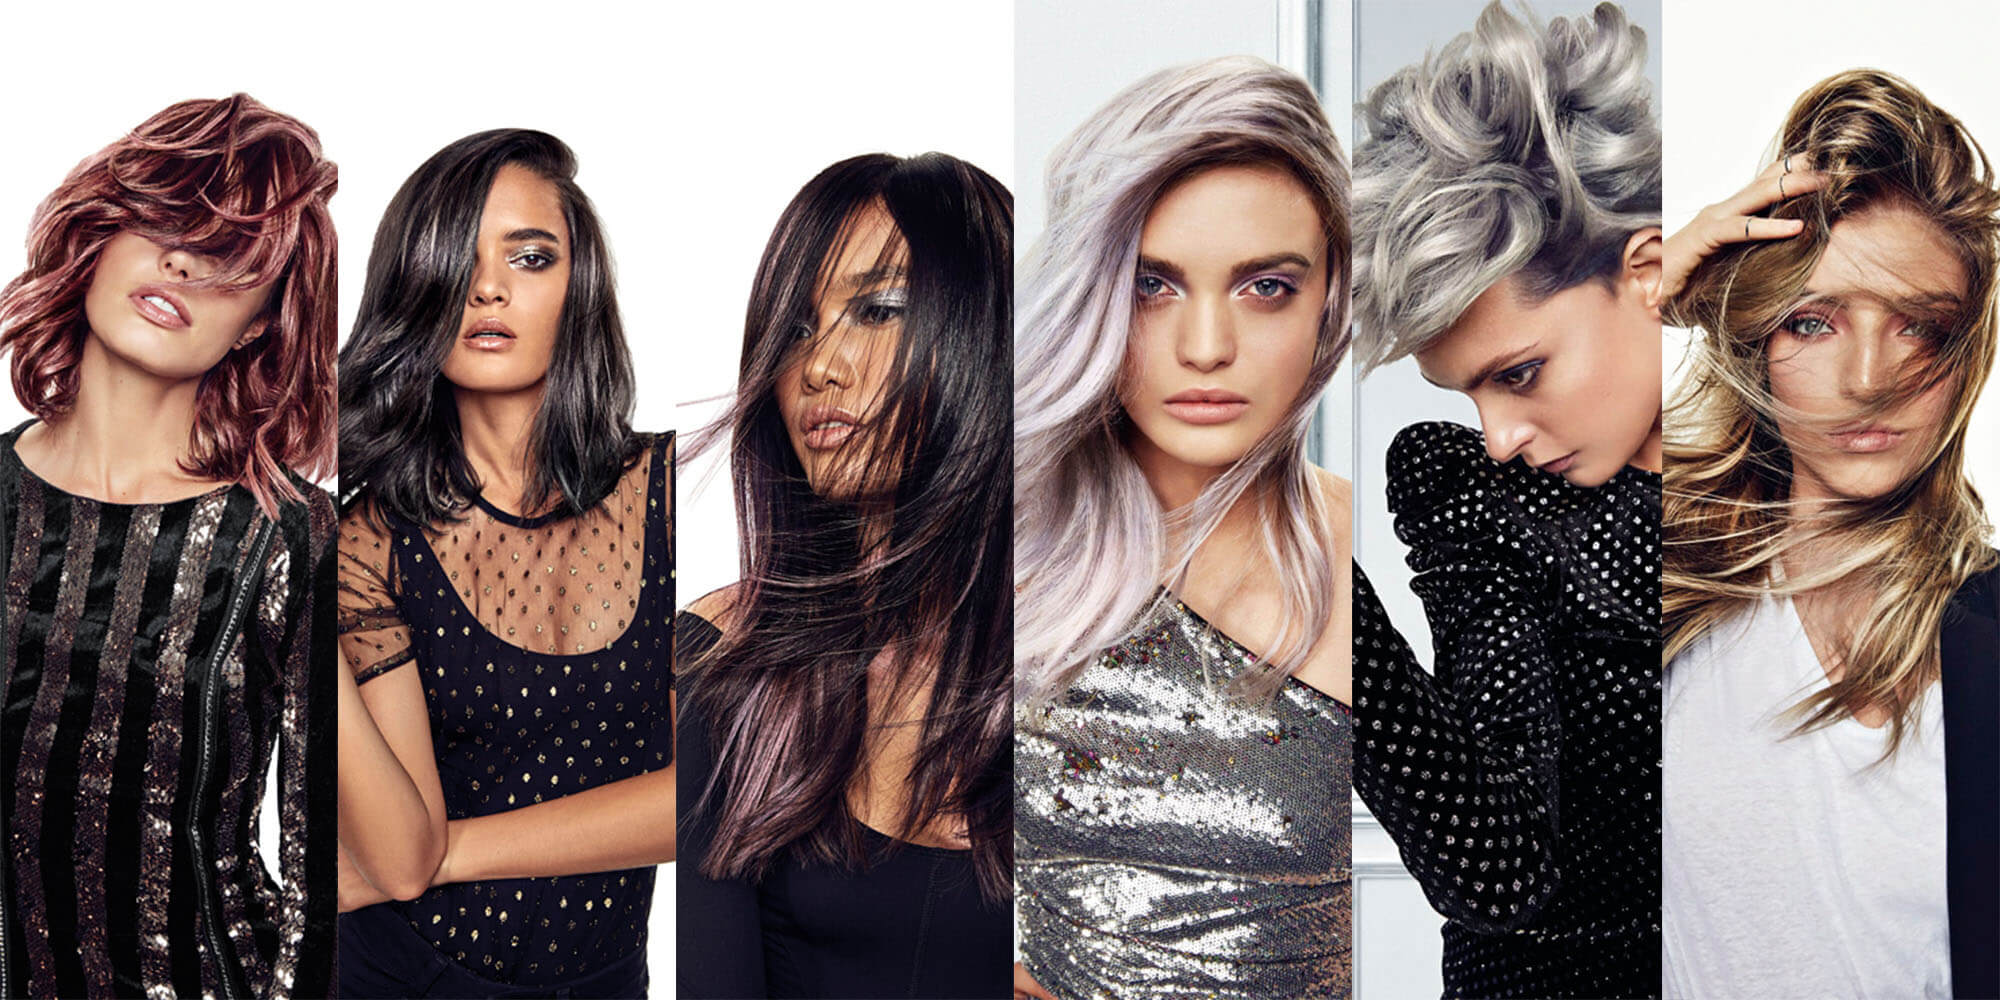 Shimmer for You, de L’Oréal Professionnel, é uma coleção que engloba três marcas e dá vida ao cabelo metalizado. A tendência que chega forte ao Brasil e, no mundo, já virou febre no Instagram.